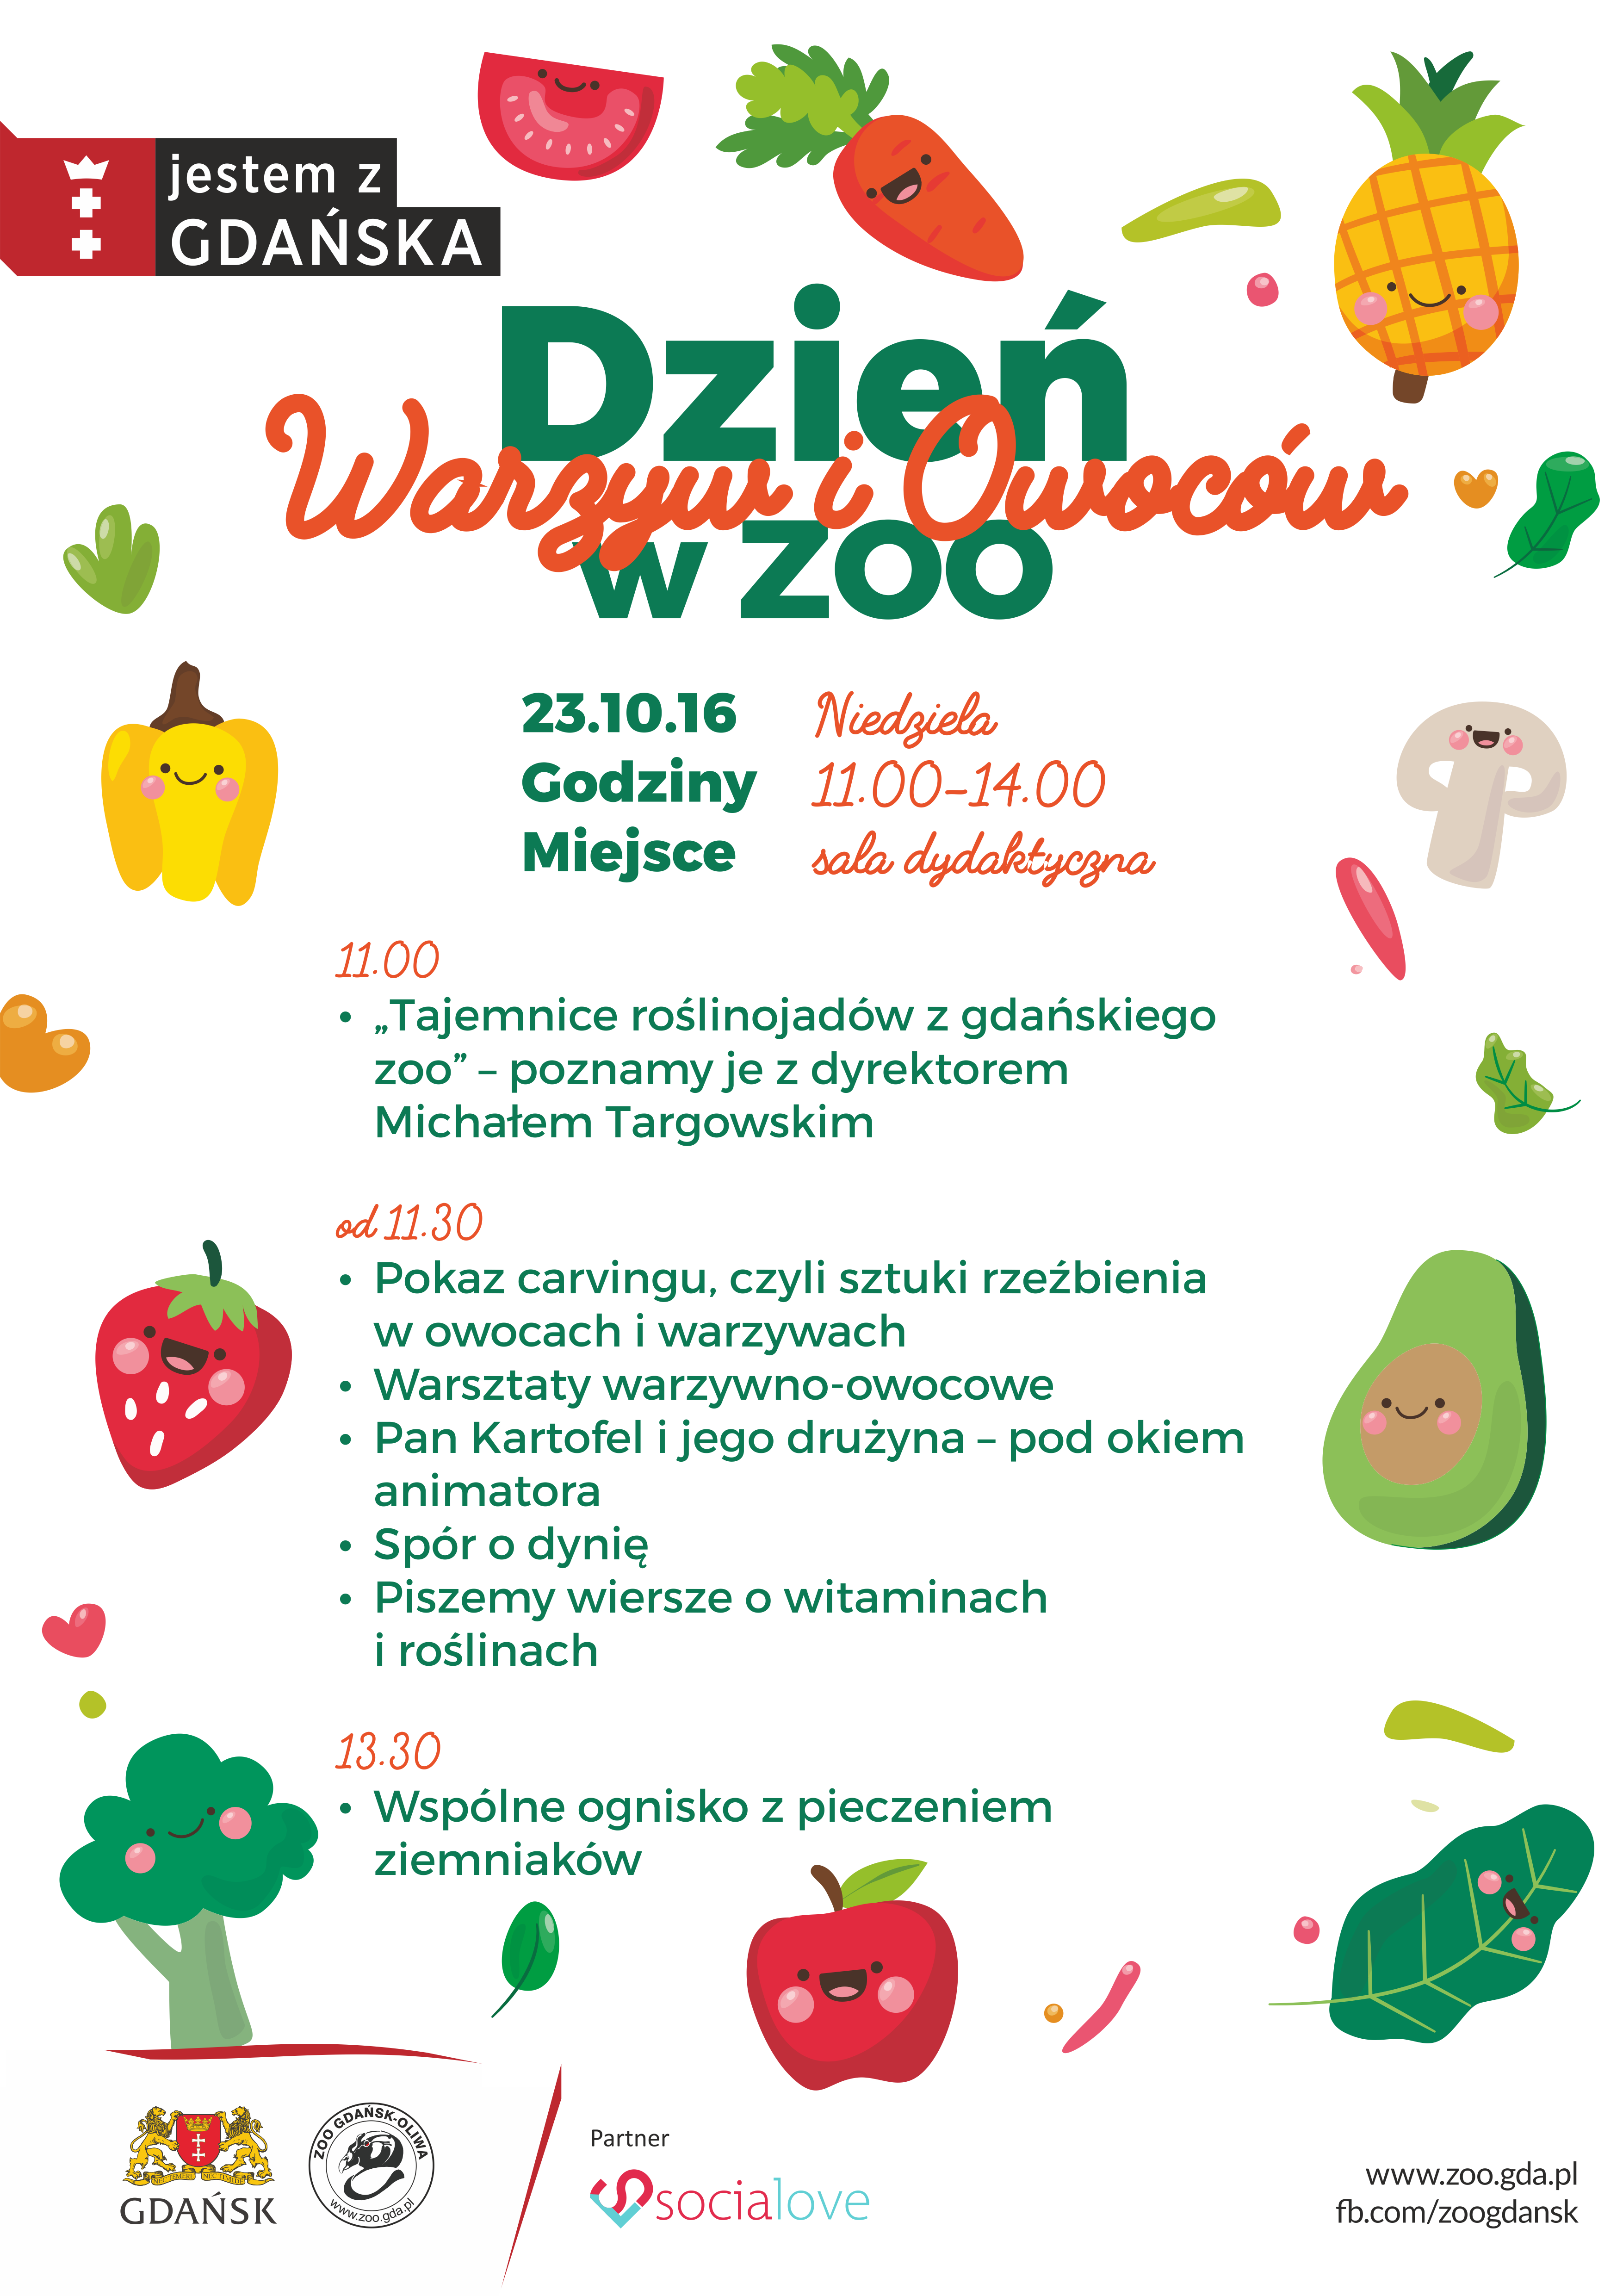 dzień warzyw i owoców w gdańskim zoo